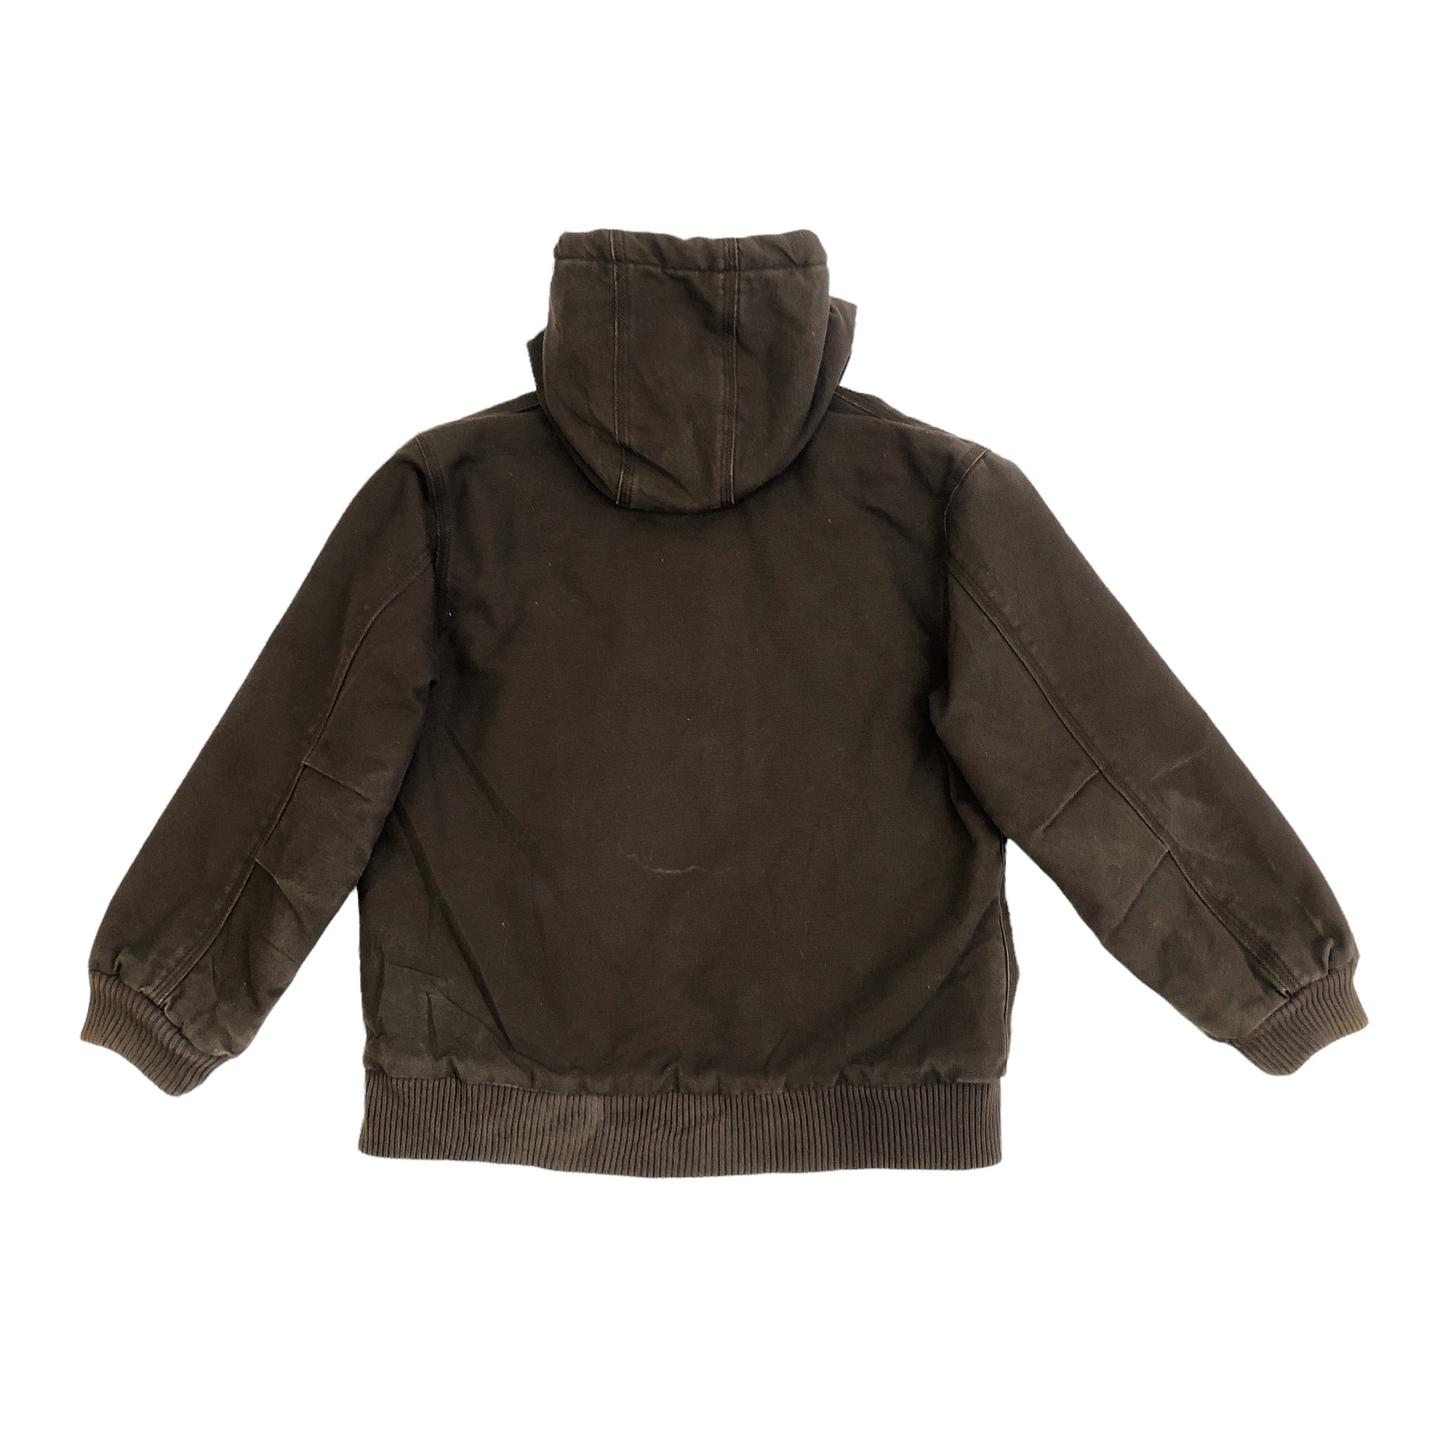 Vintage Brown Carhartt Jacket (Age 10-12)